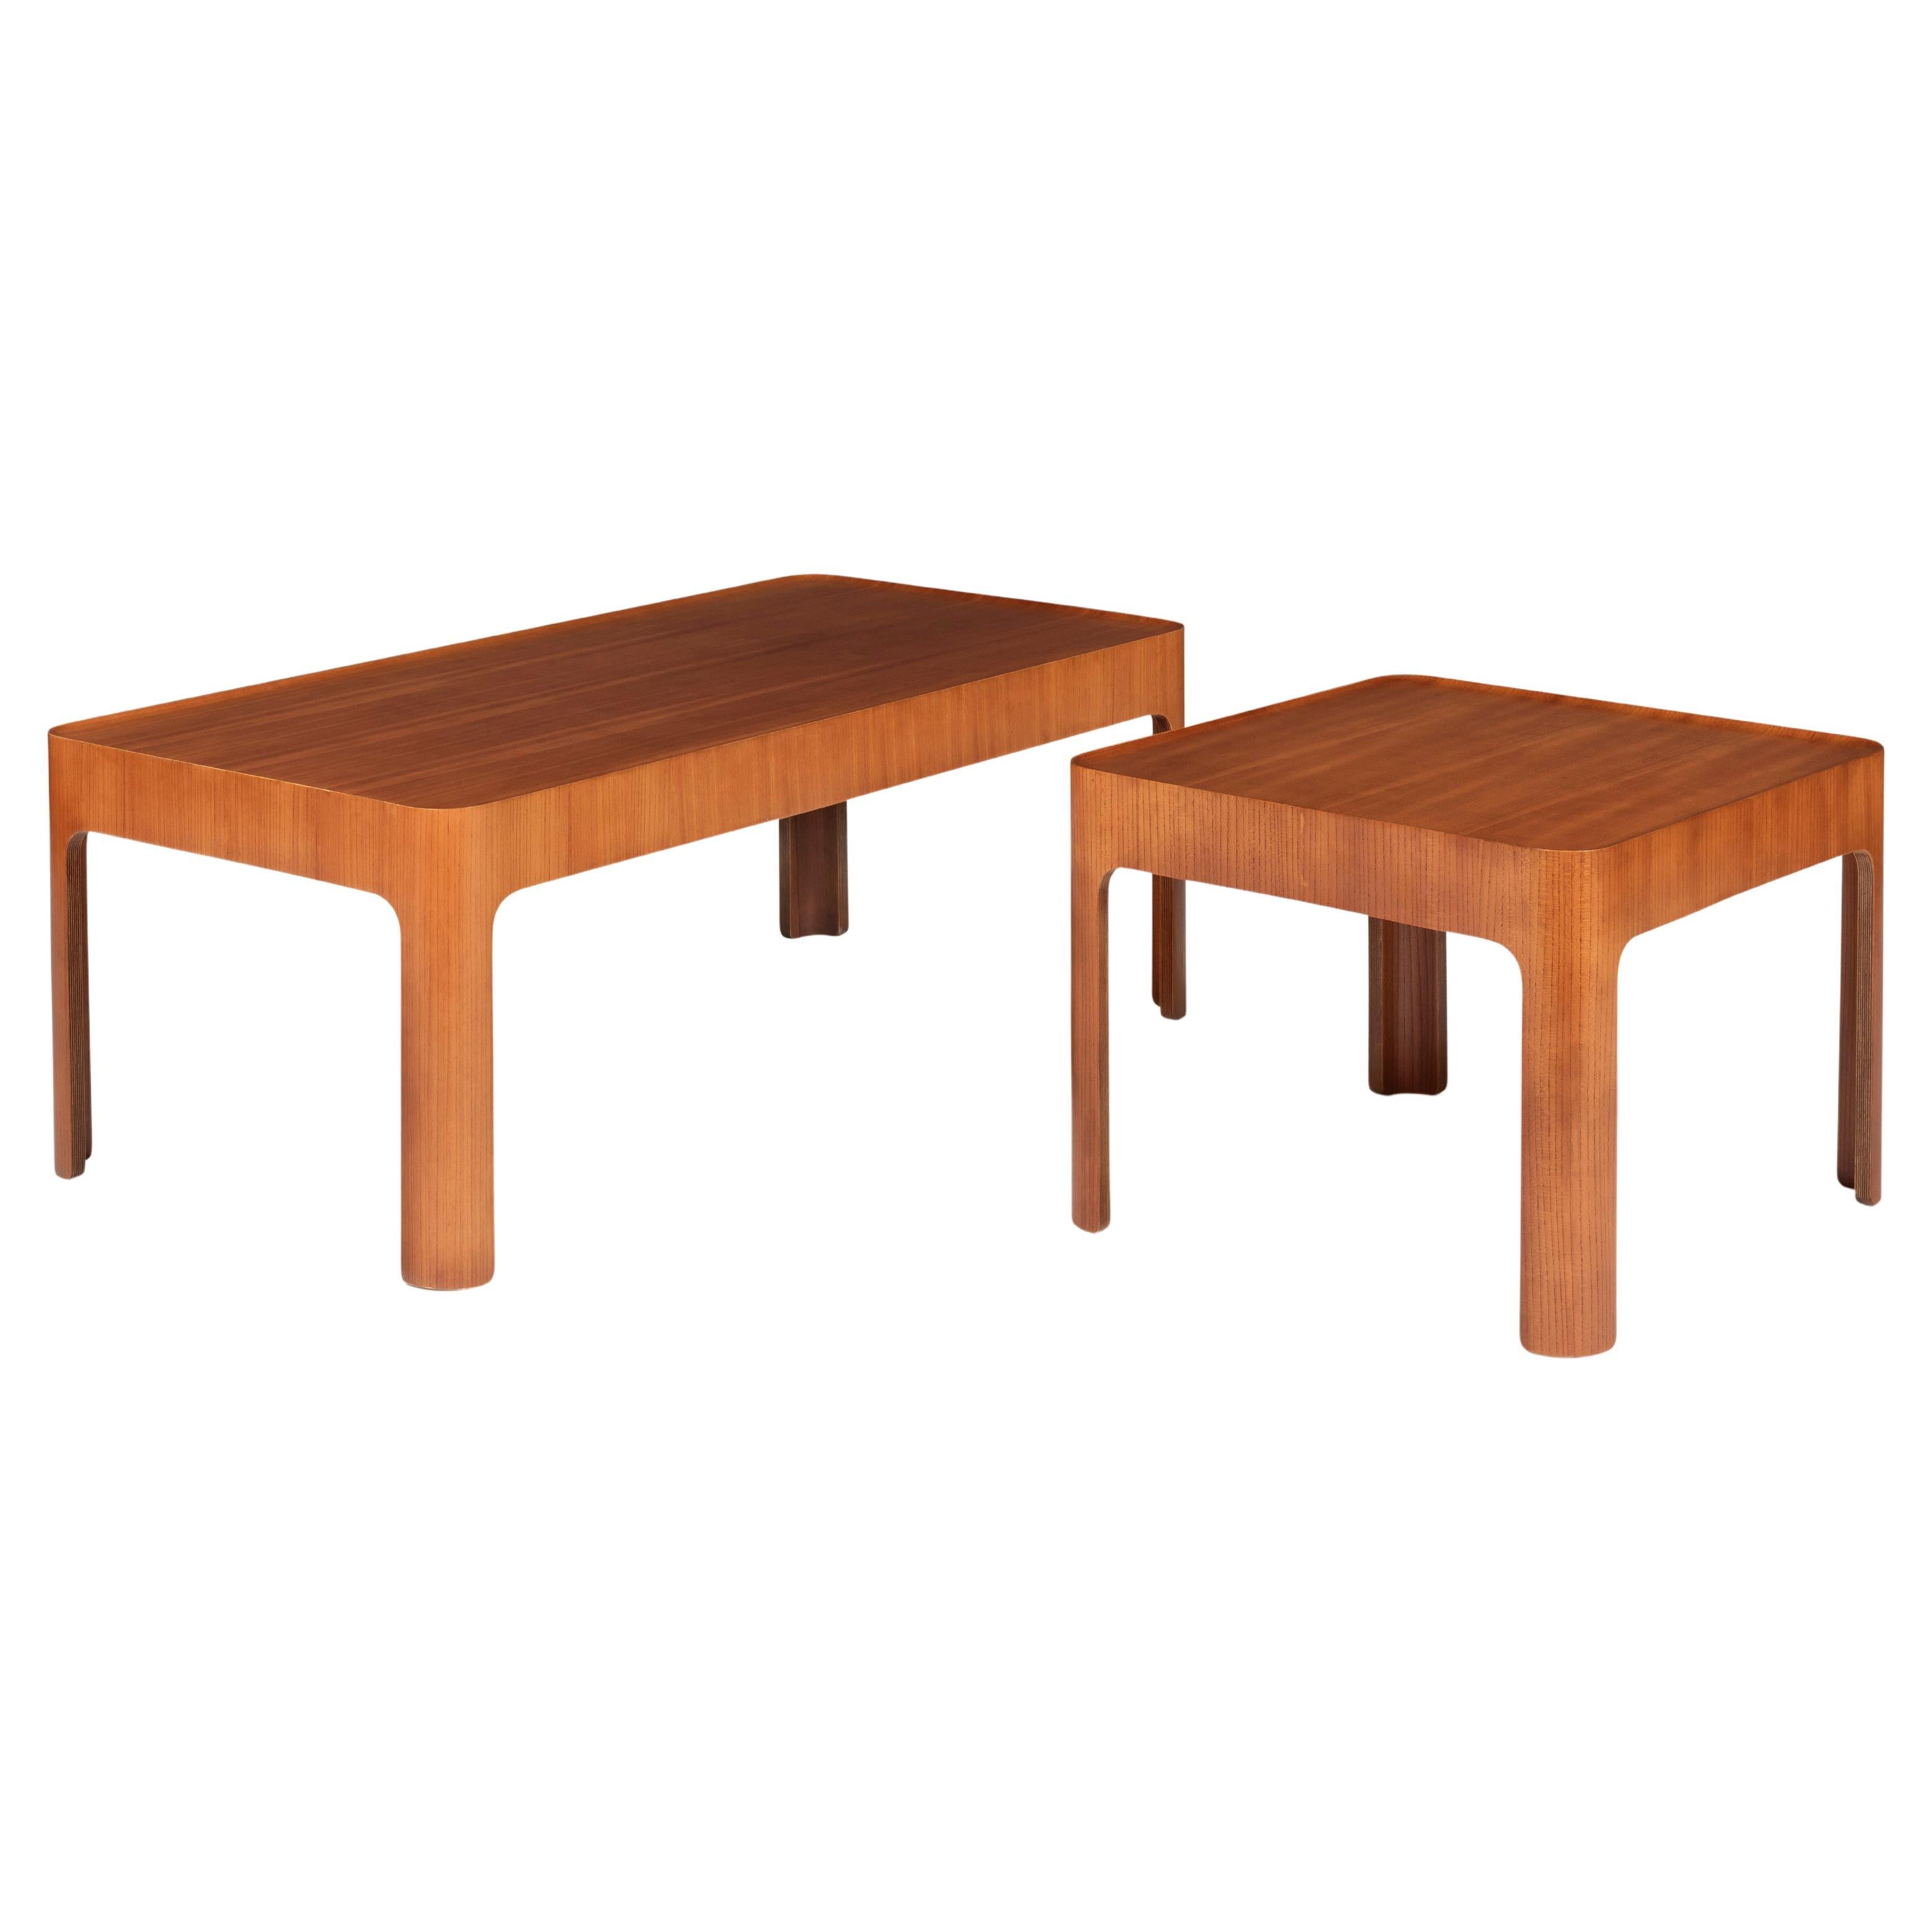 Dimensions : H 45 cm x L 120 cm x D 60 cm 
ou H 17.7  x 47.2  x 23,6 pouces

Table basse conçue par Isamu Kenmochi et fabriquée par Tendo Mokko au Japon, vers 1967. En bon état d'origine avec une usure mineure conforme à l'âge et à l'utilisation,